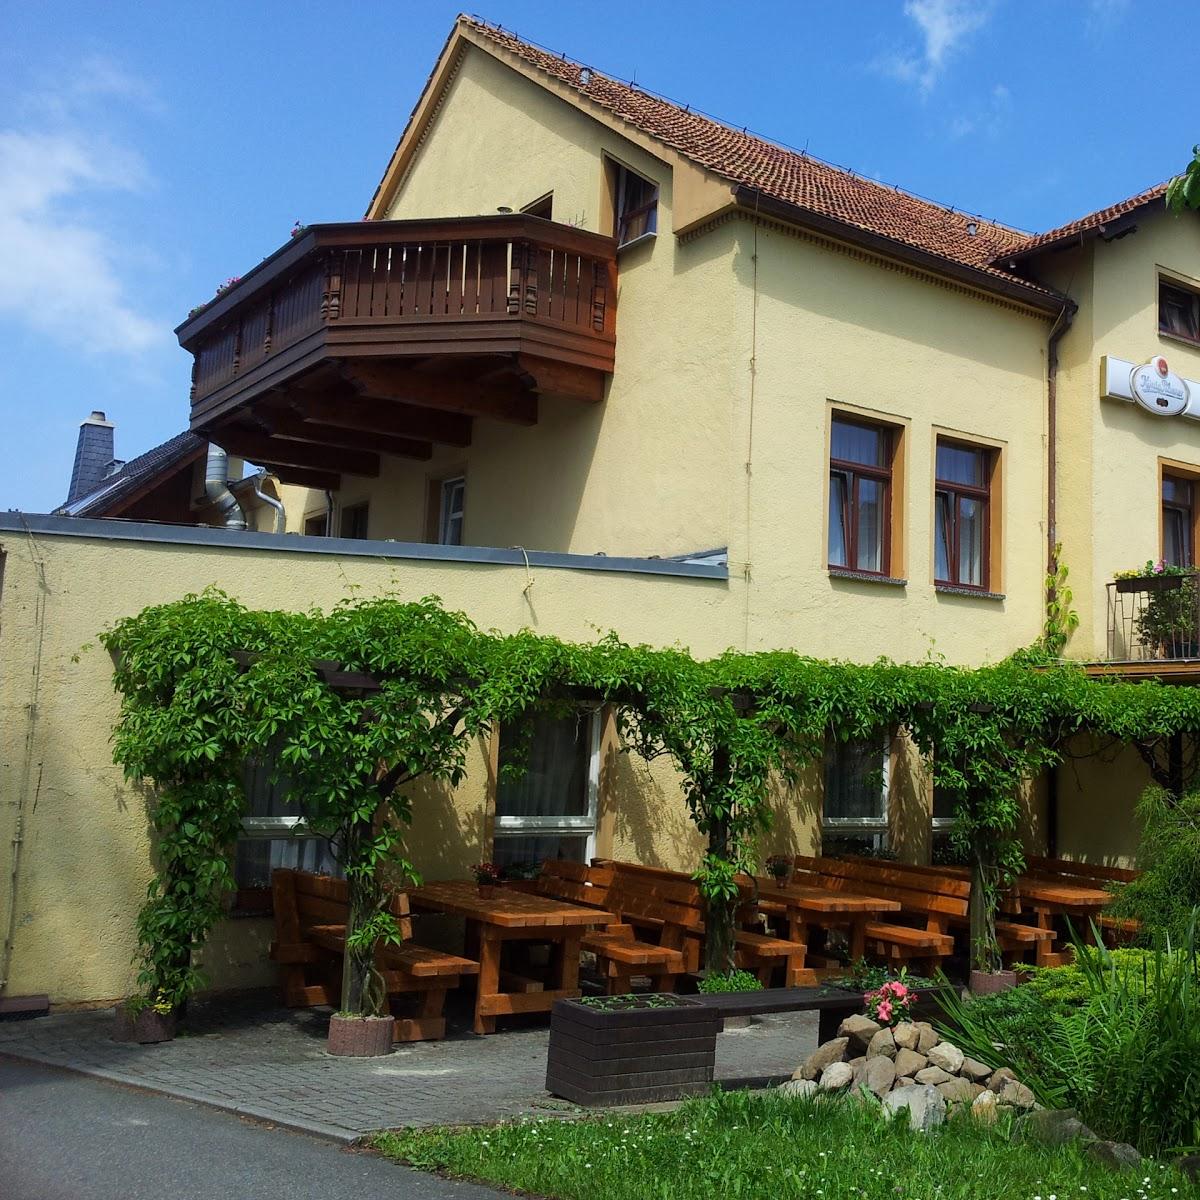 Restaurant "Hotel Zur Linde" in Seifhennersdorf